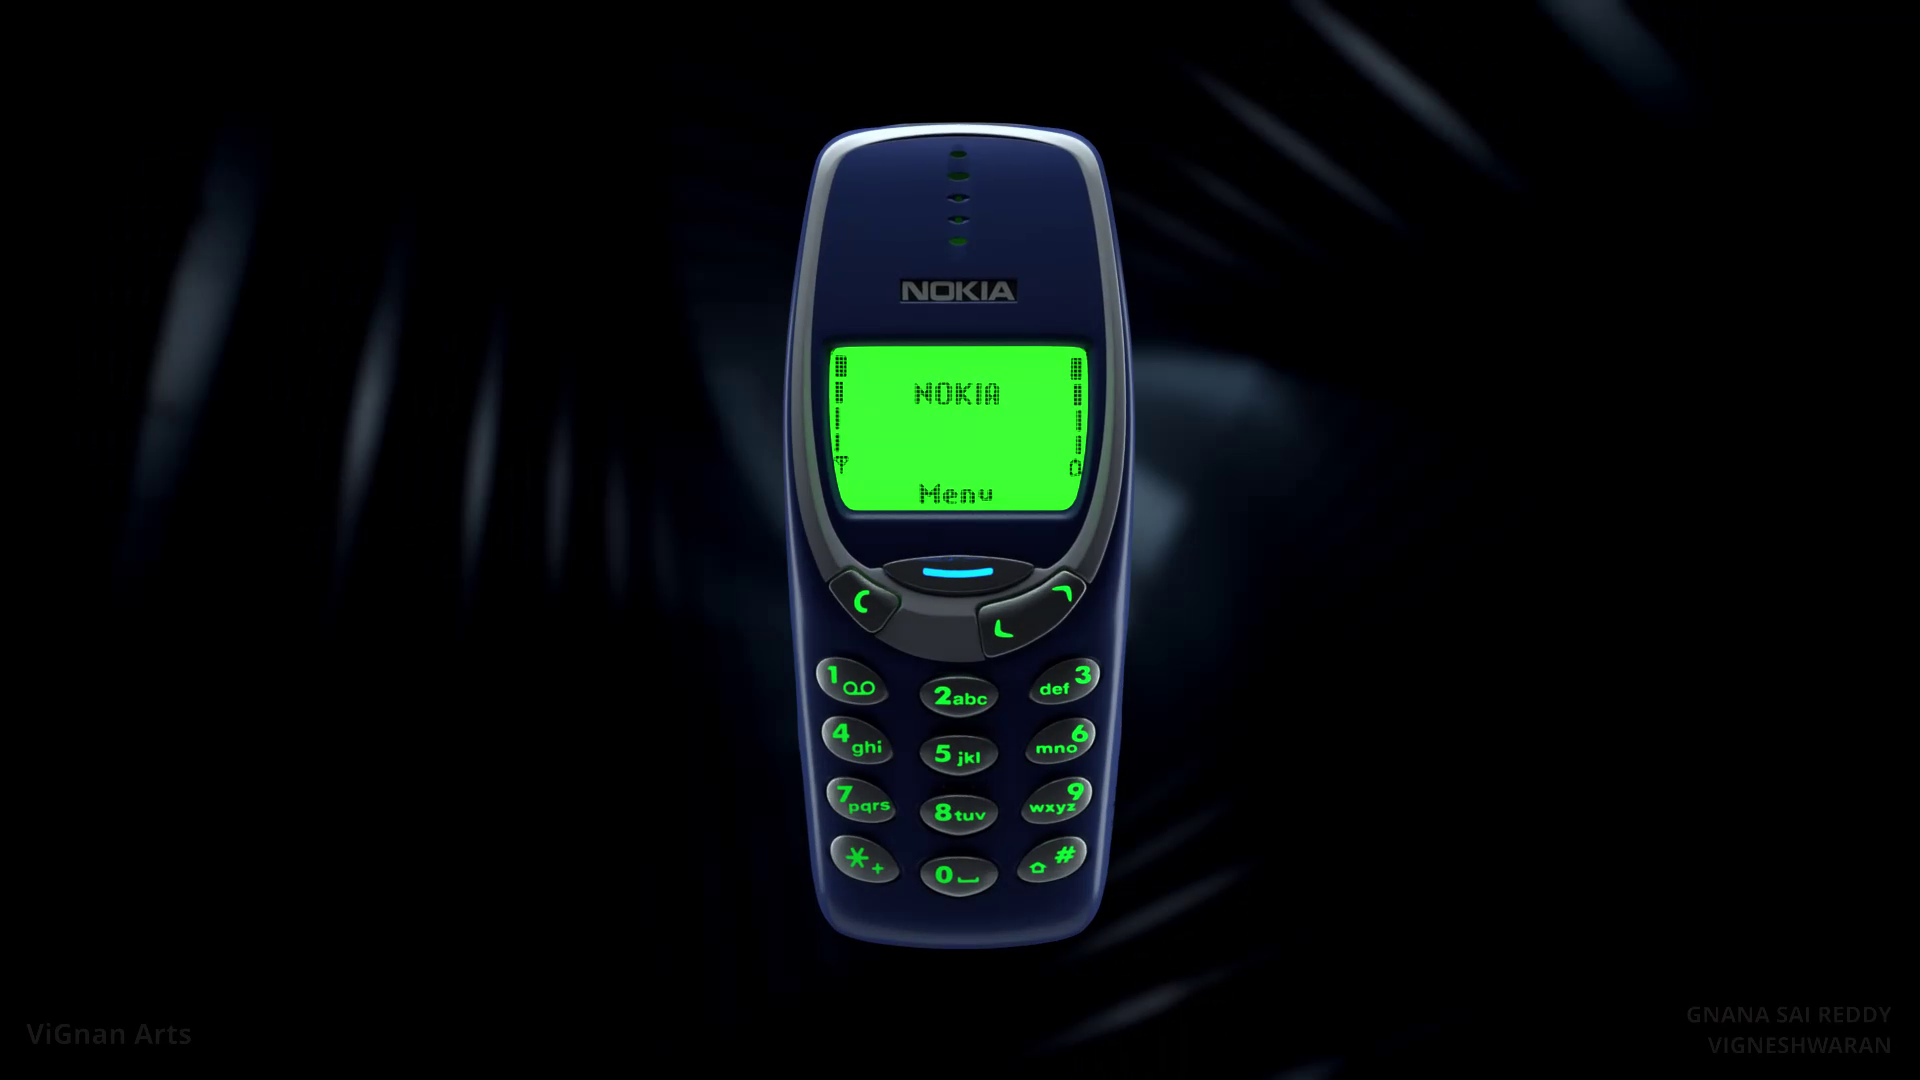 Thử cắm Nokia 3310 vào ô tô và cái kết khiến nhiều người ngỡ ngàng: Đúng là "huyền thoại", cái gì cũng có thể làm được! - Ảnh 2.